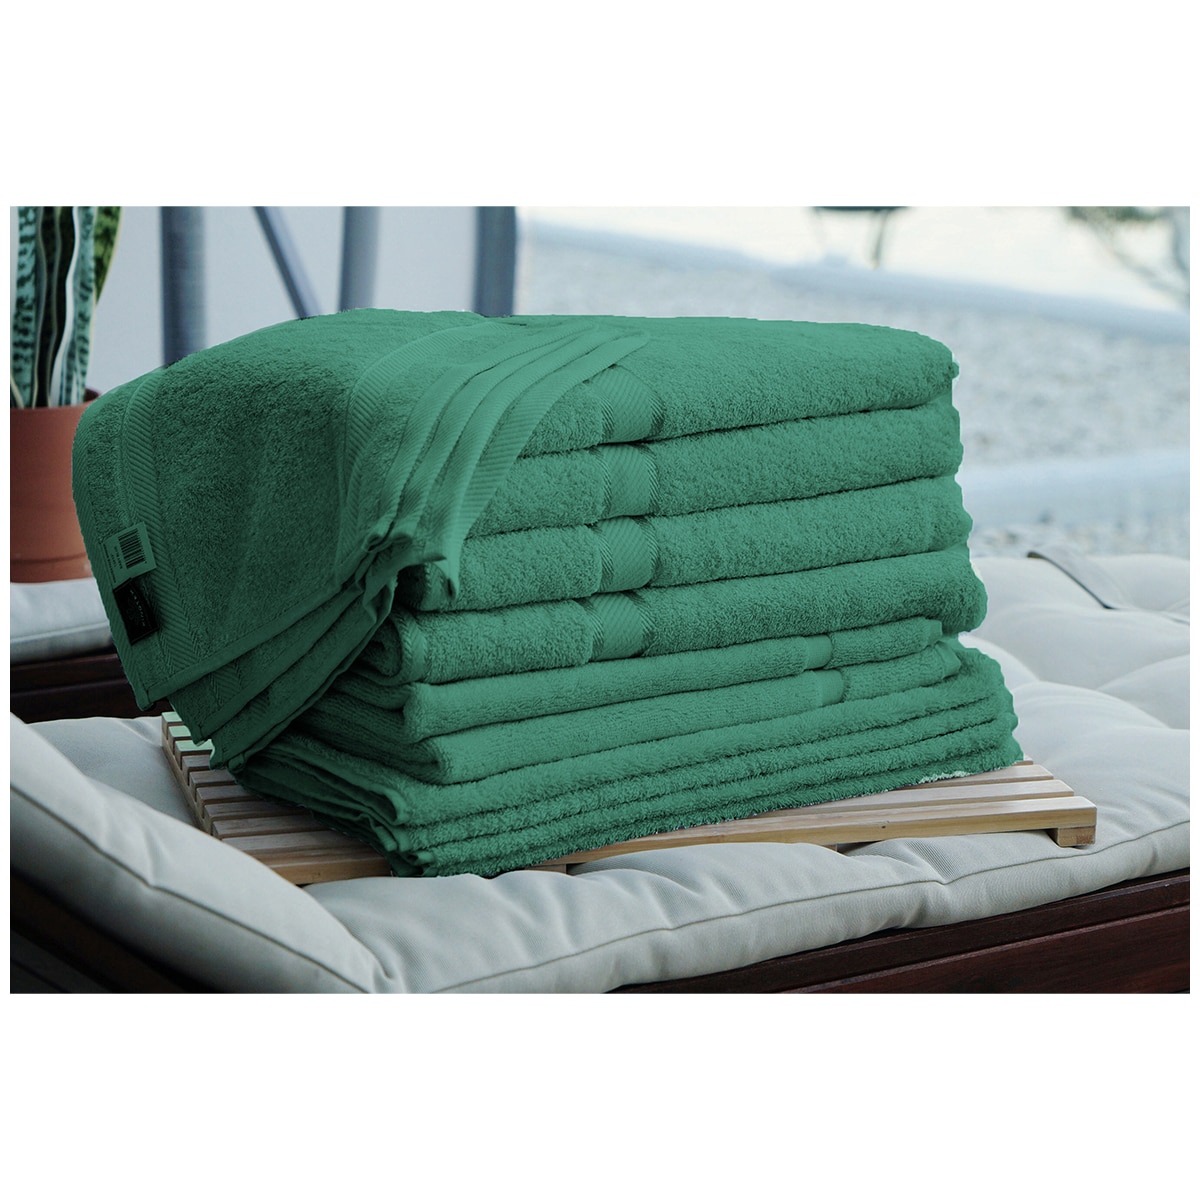 Kingtex Plain dyed 100% Combed Cotton towel range 550gsm Bath Sheet set 14 piece - Forest